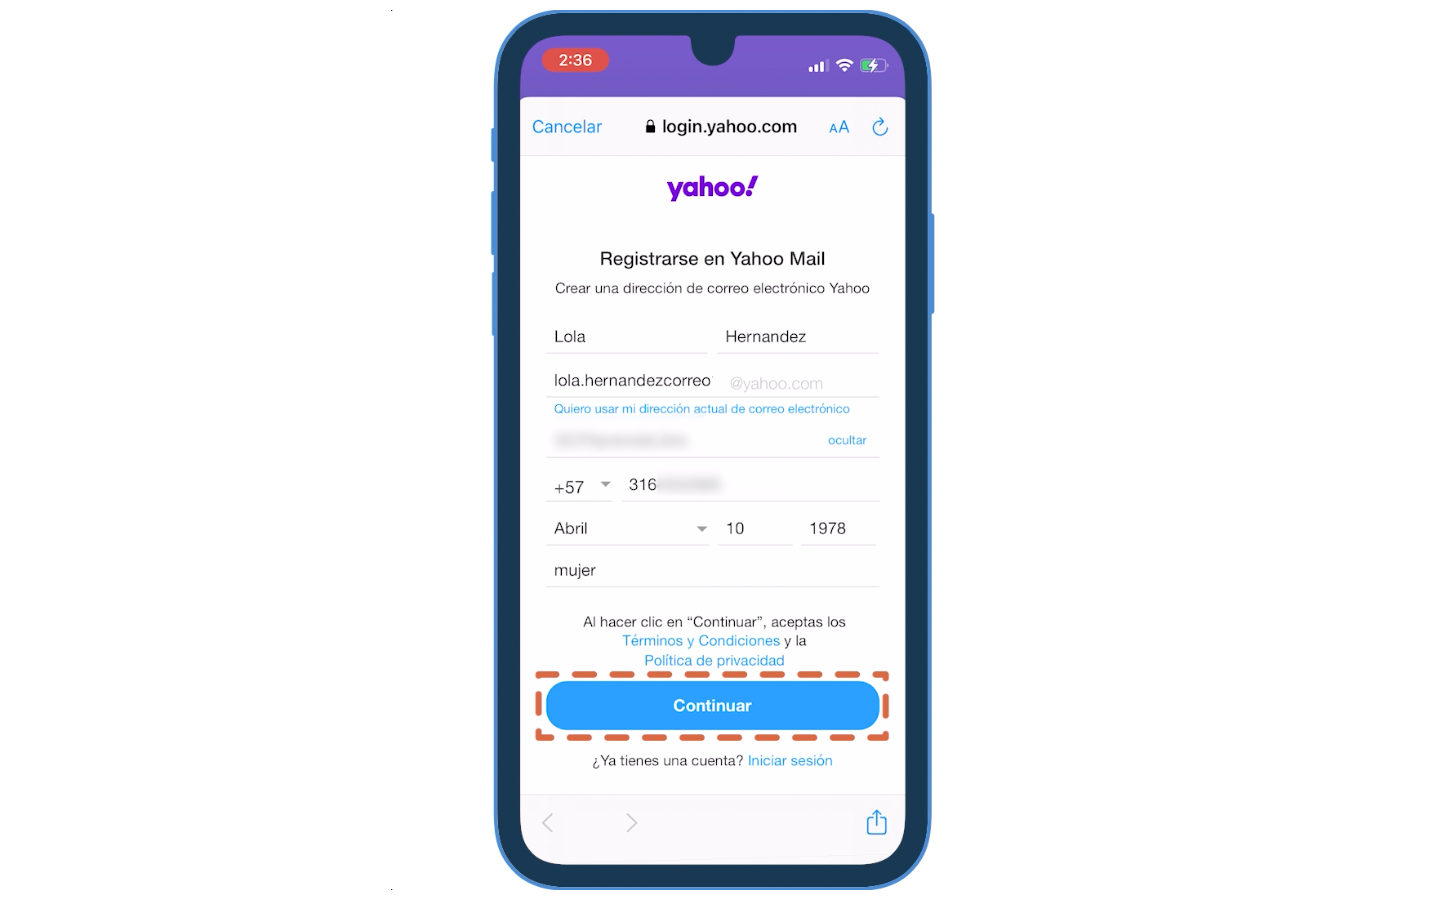 Recuerda que al pulsar Continuar estarás aceptando los términos y condiciones y la política de privacidad de Yahoo.